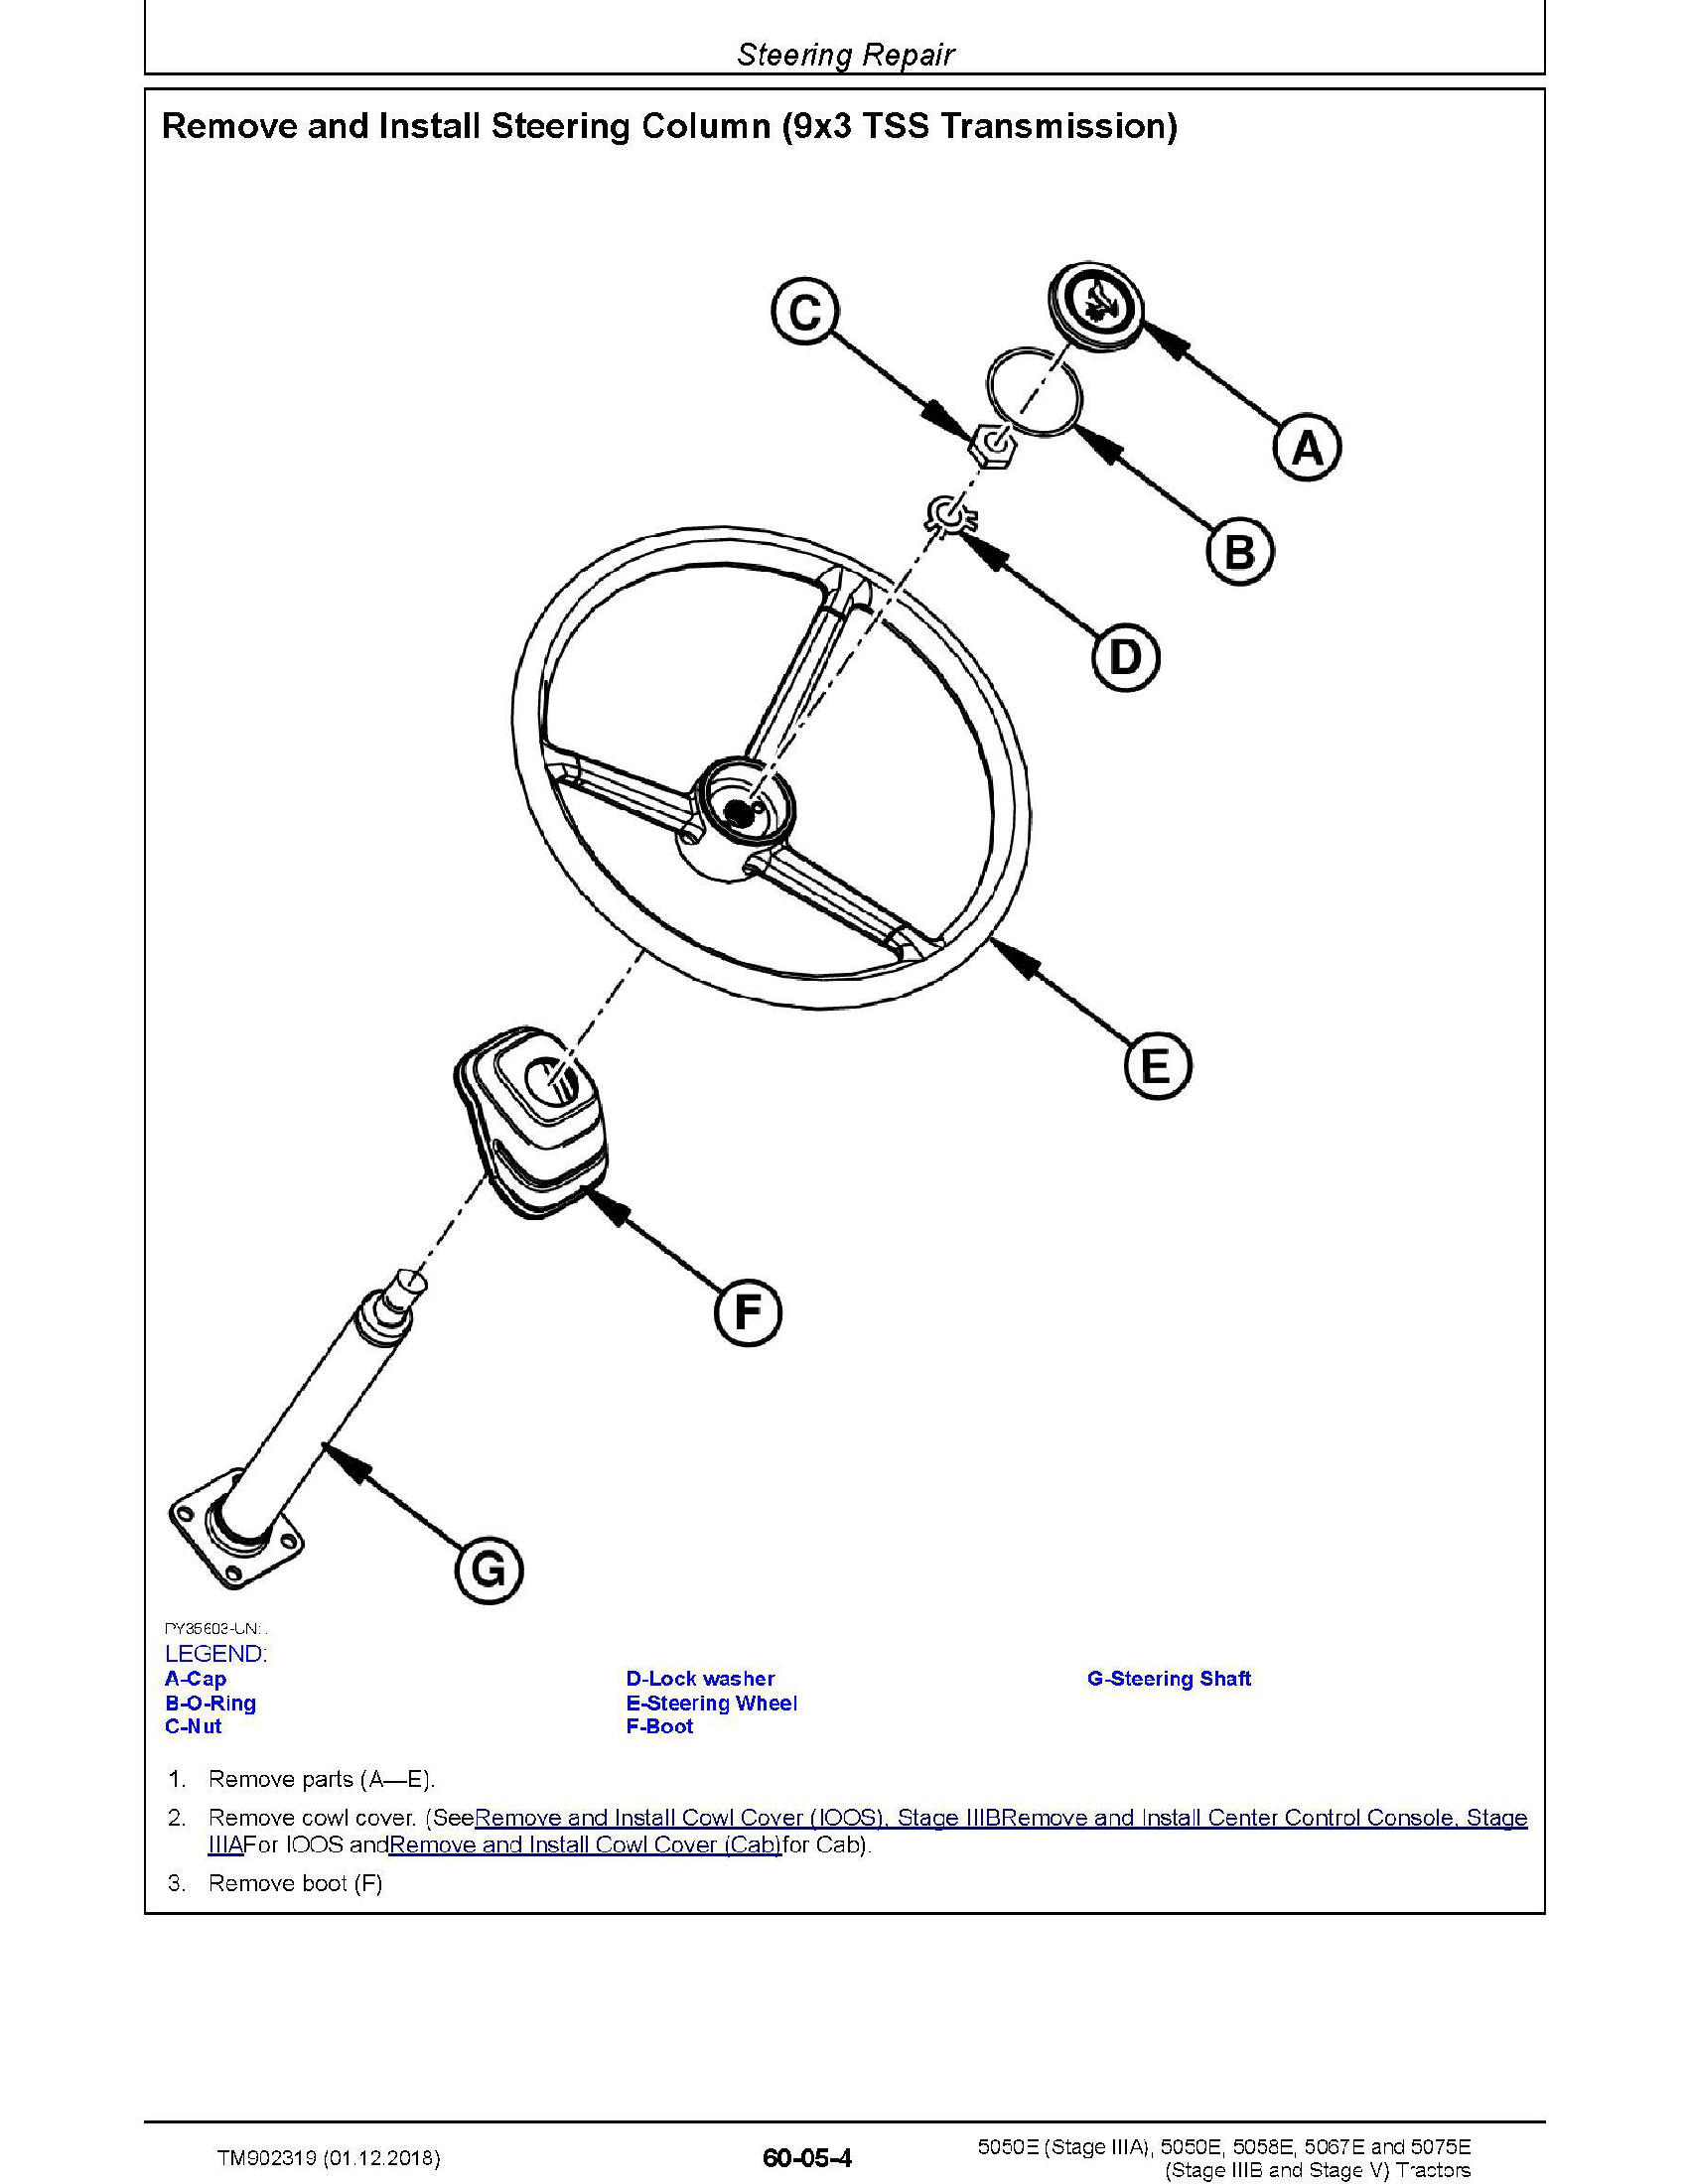 John Deere 5525N manual pdf